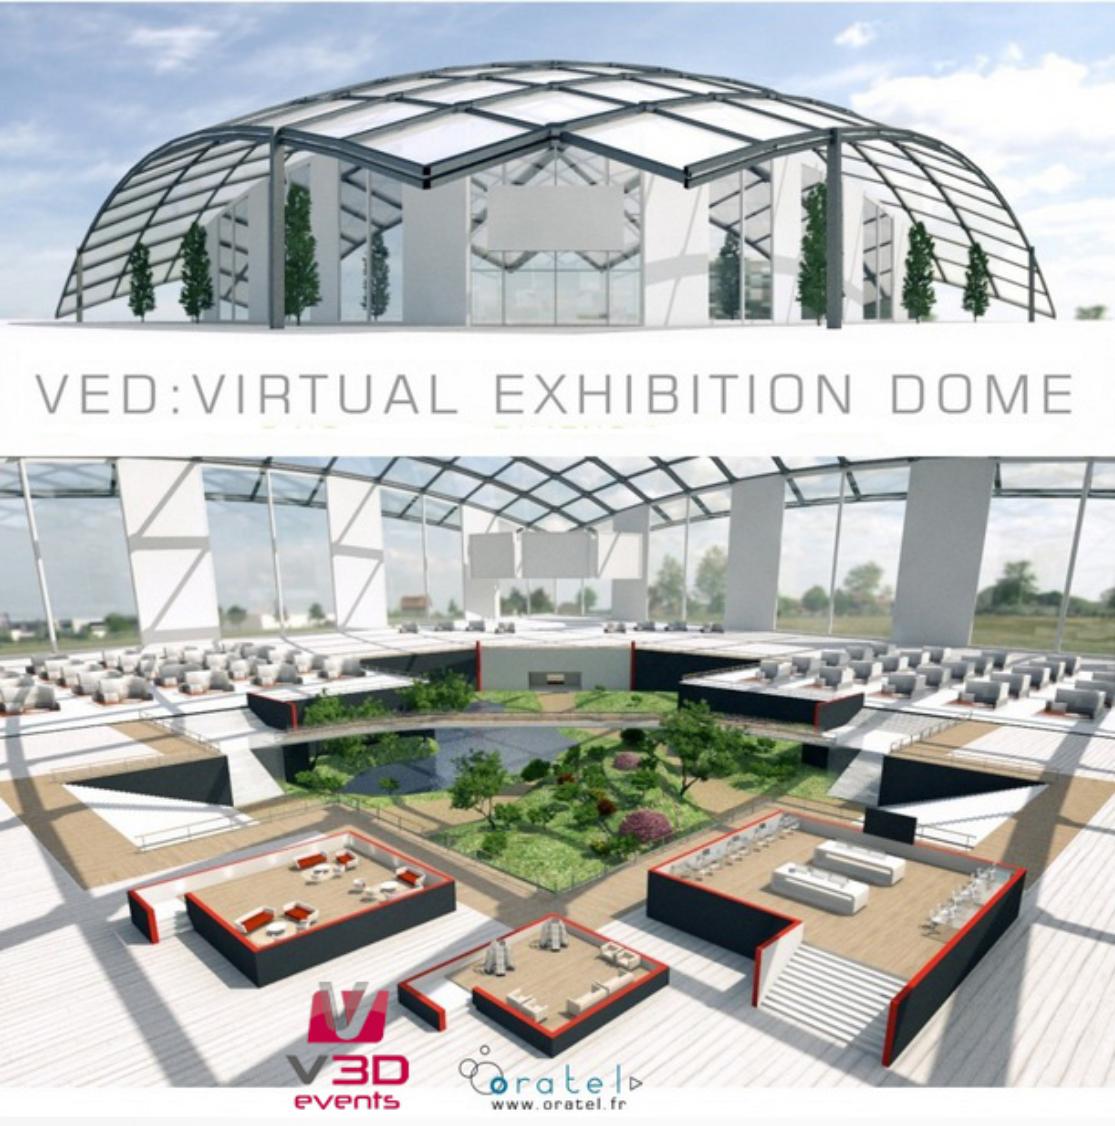 V3D Events réalise le Virtual Exhibition Dome pour Oratel.